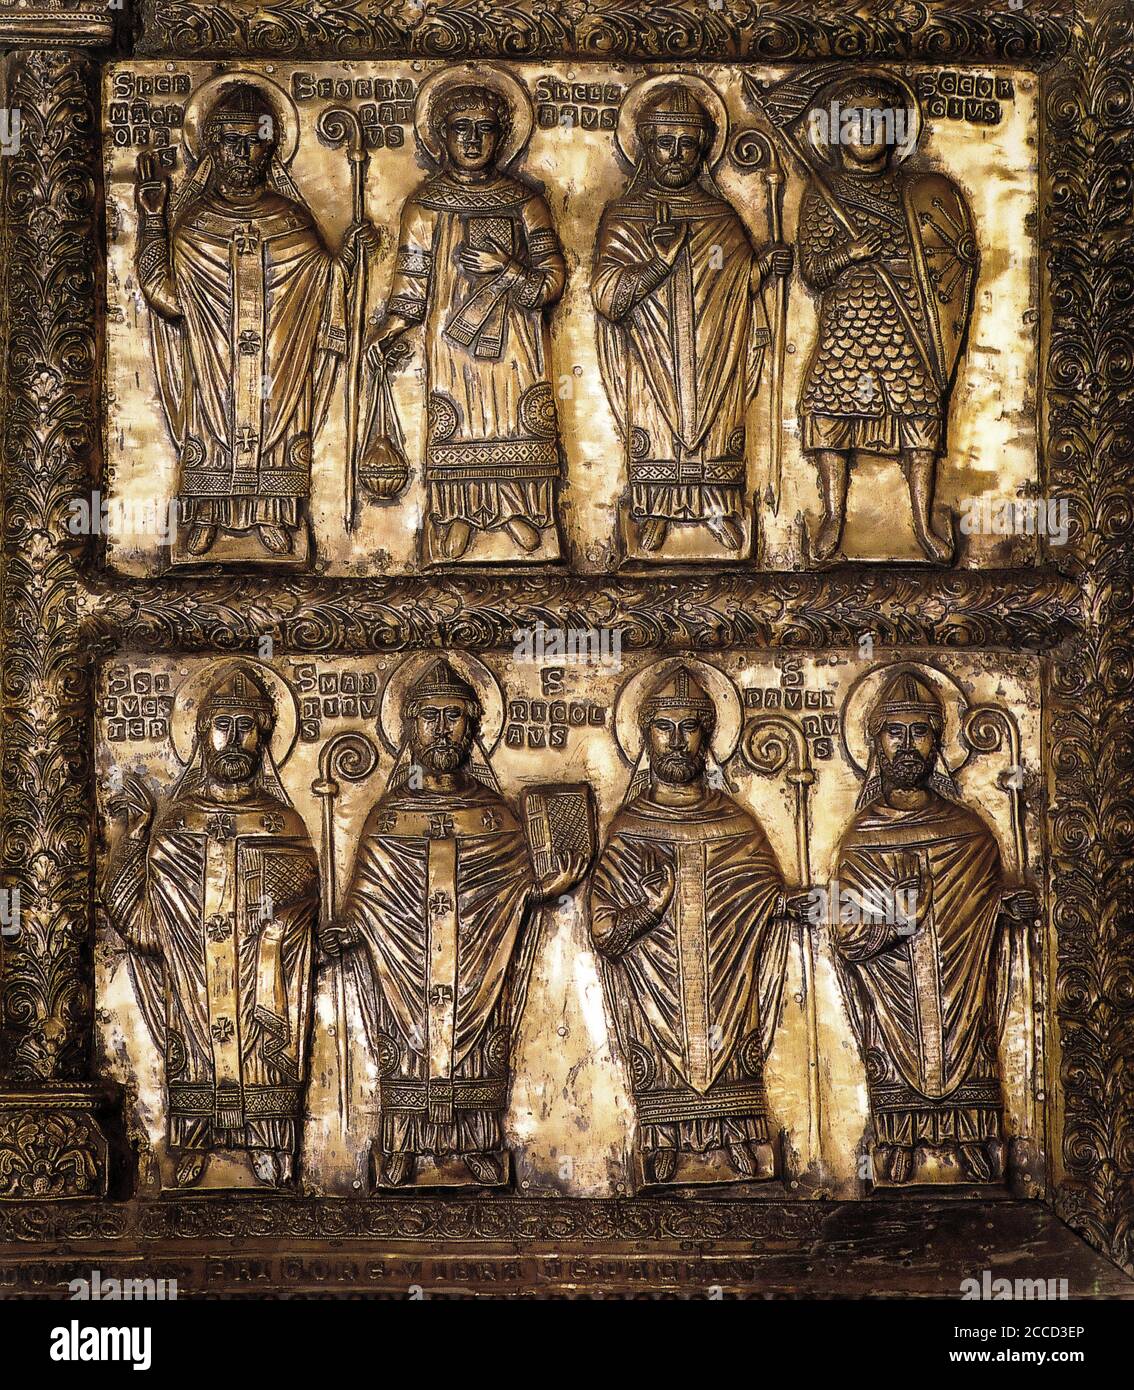 Italien Friuli Kathedrale Cividale del Friuli - Altarbild - rechts Seitendetail - 12. Jahrhundert vergoldete Silberplatte mit Darstellung Von Heiligen mit gestanzten Namen Stockfoto